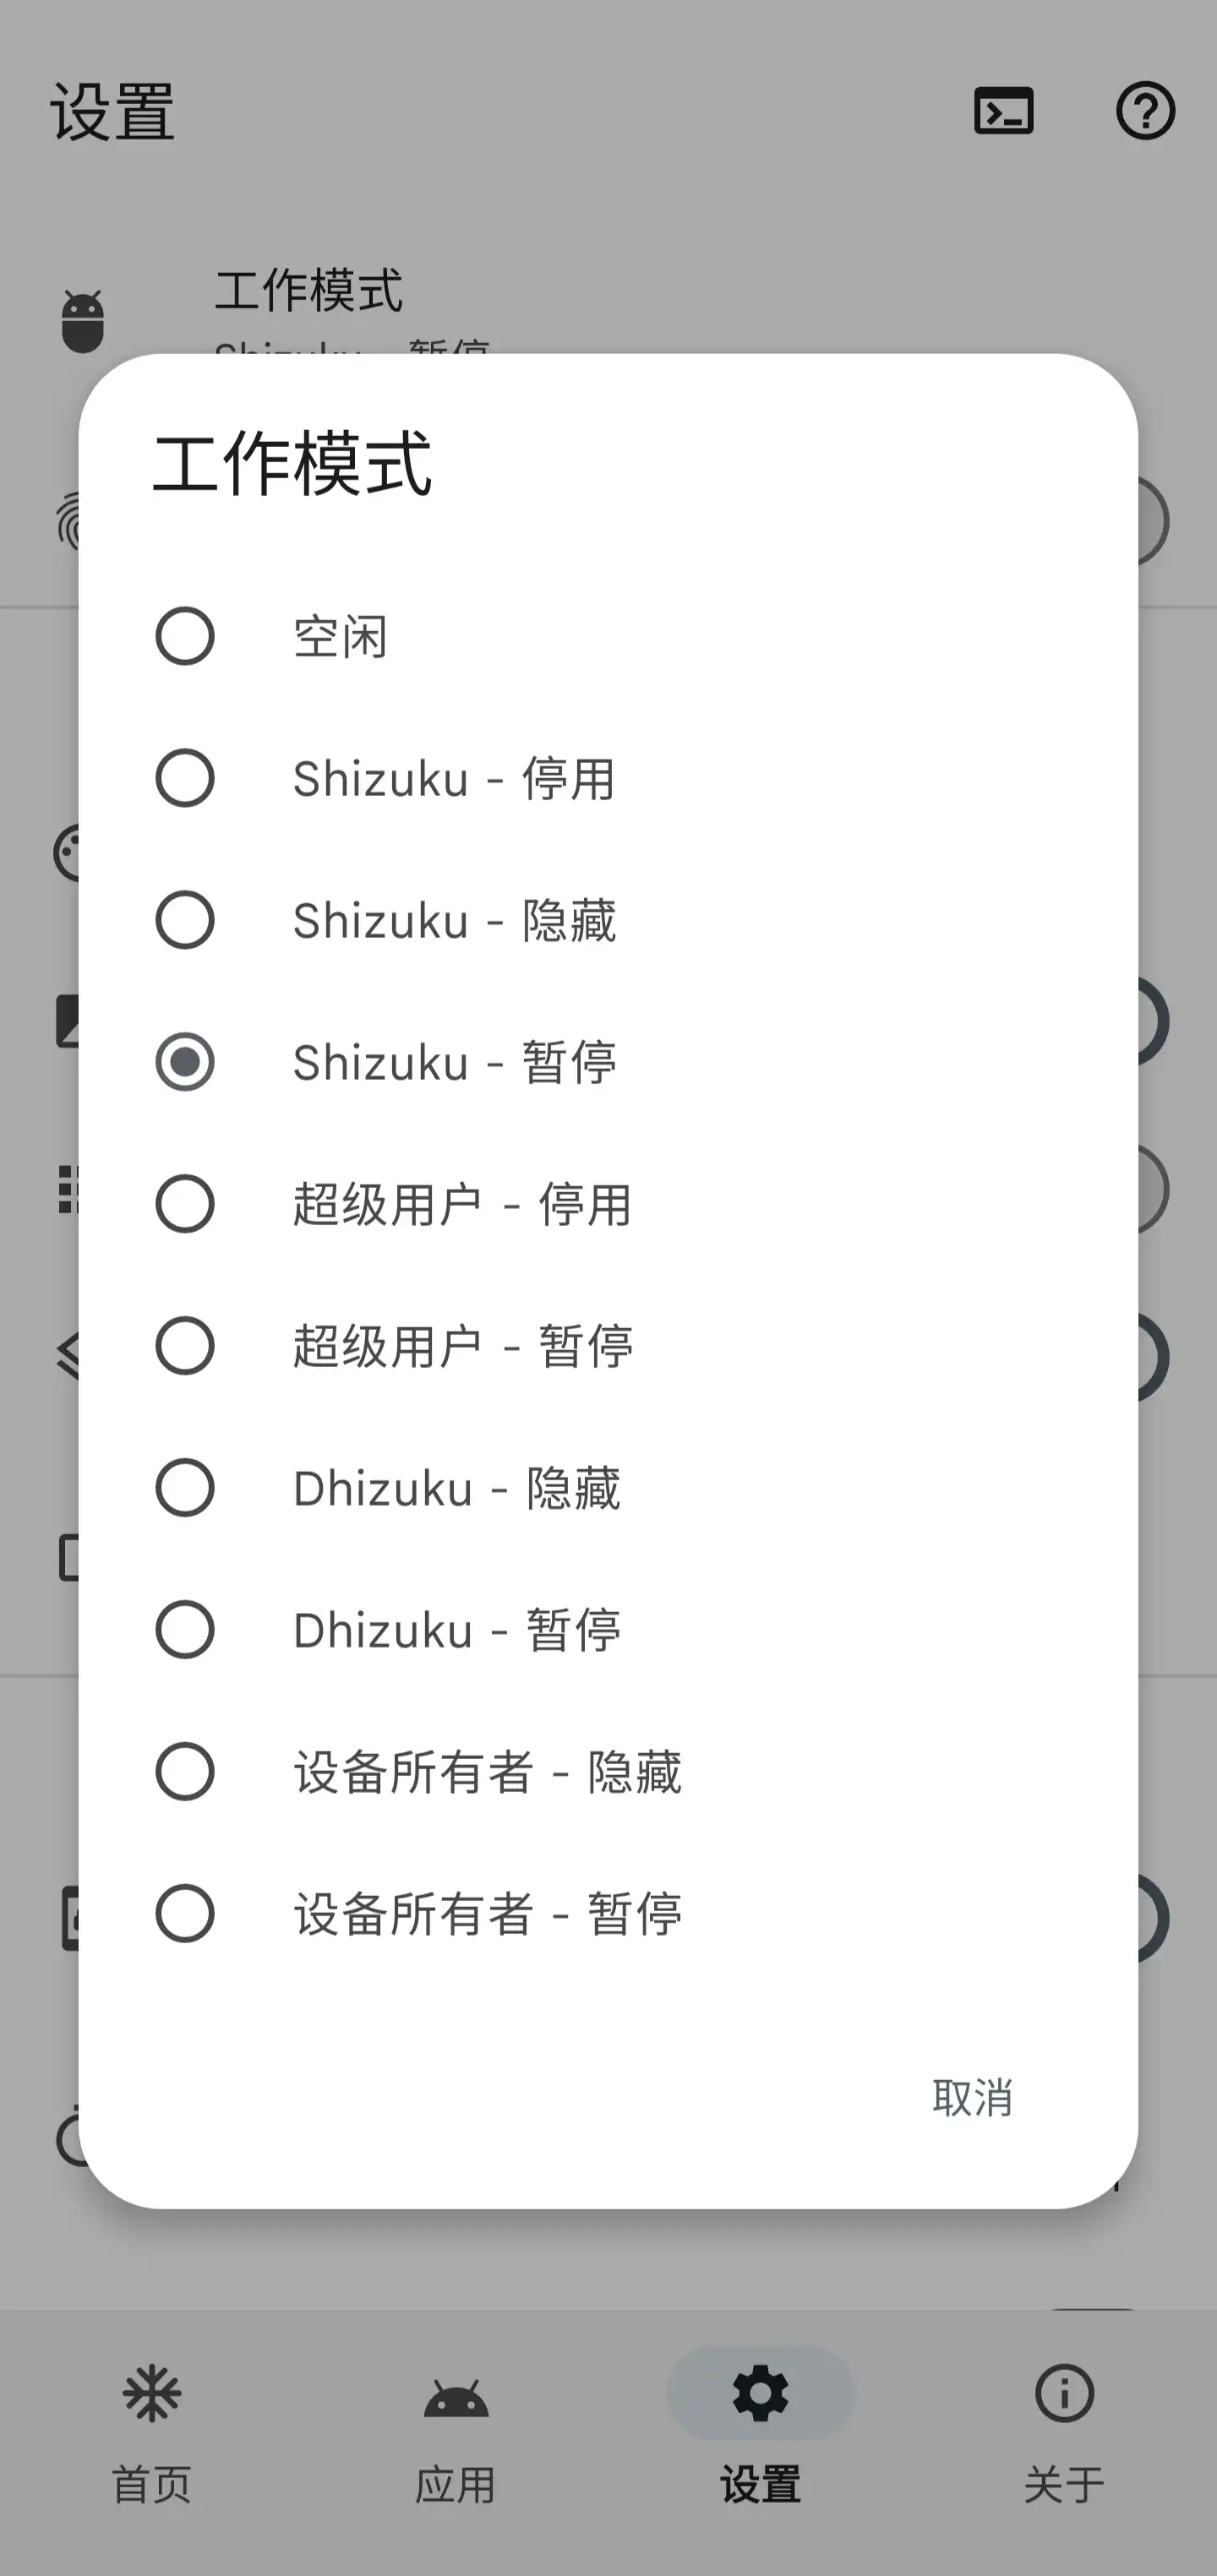 包括 Shizuku、超级用户在内四种授权方式和各种工作模式